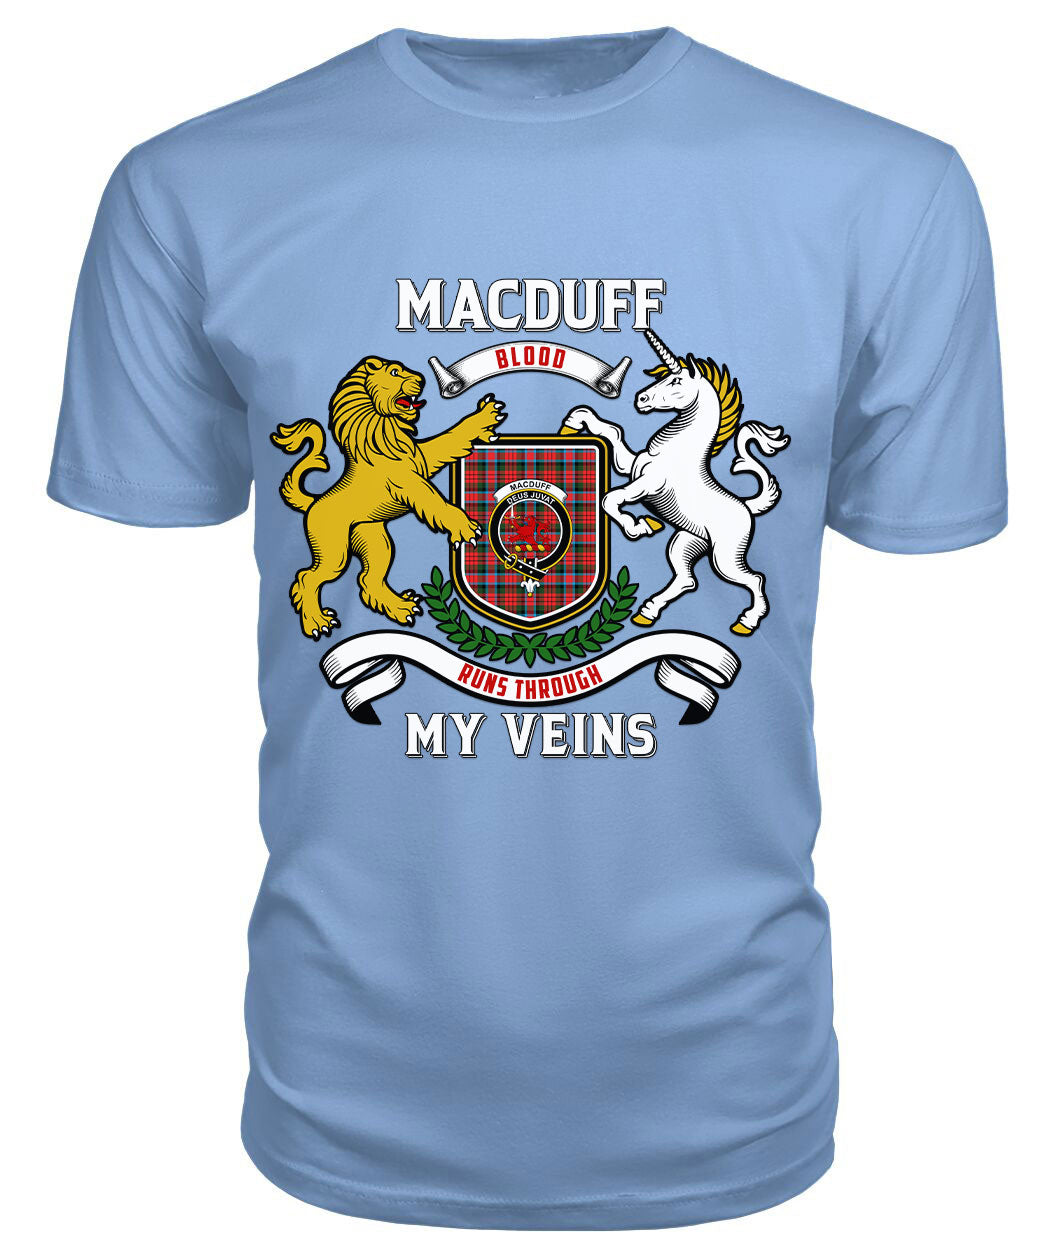 MacDuff Modern Tartan Crest 2D T-shirt - Blood Runs Through My Veins Style